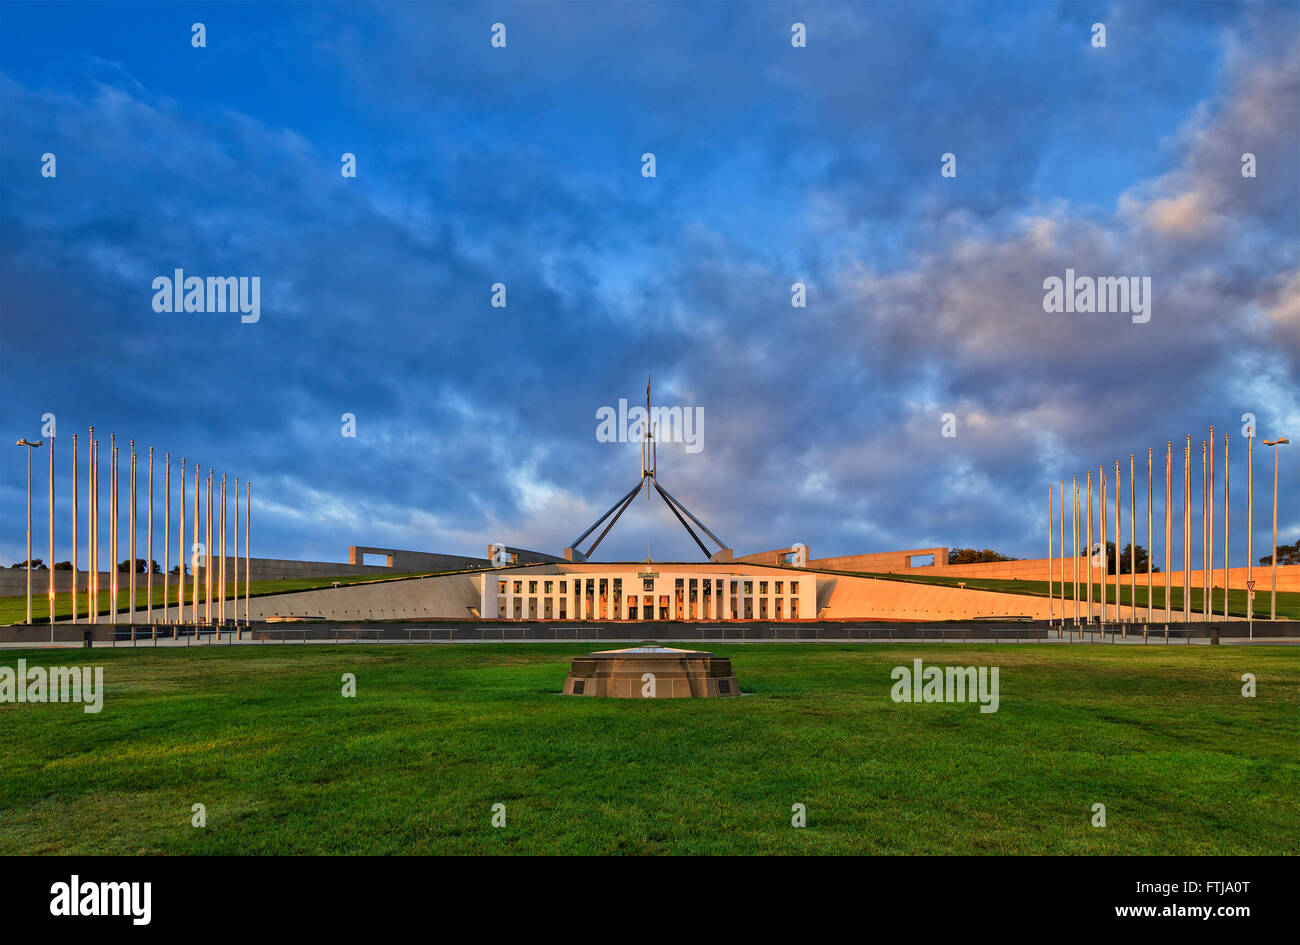 Pelouse verte et de grands mâts de drapeaux à l'avant du nouveau parlement à Canberra au lever du soleil. Territoire de la capitale australienne Banque D'Images